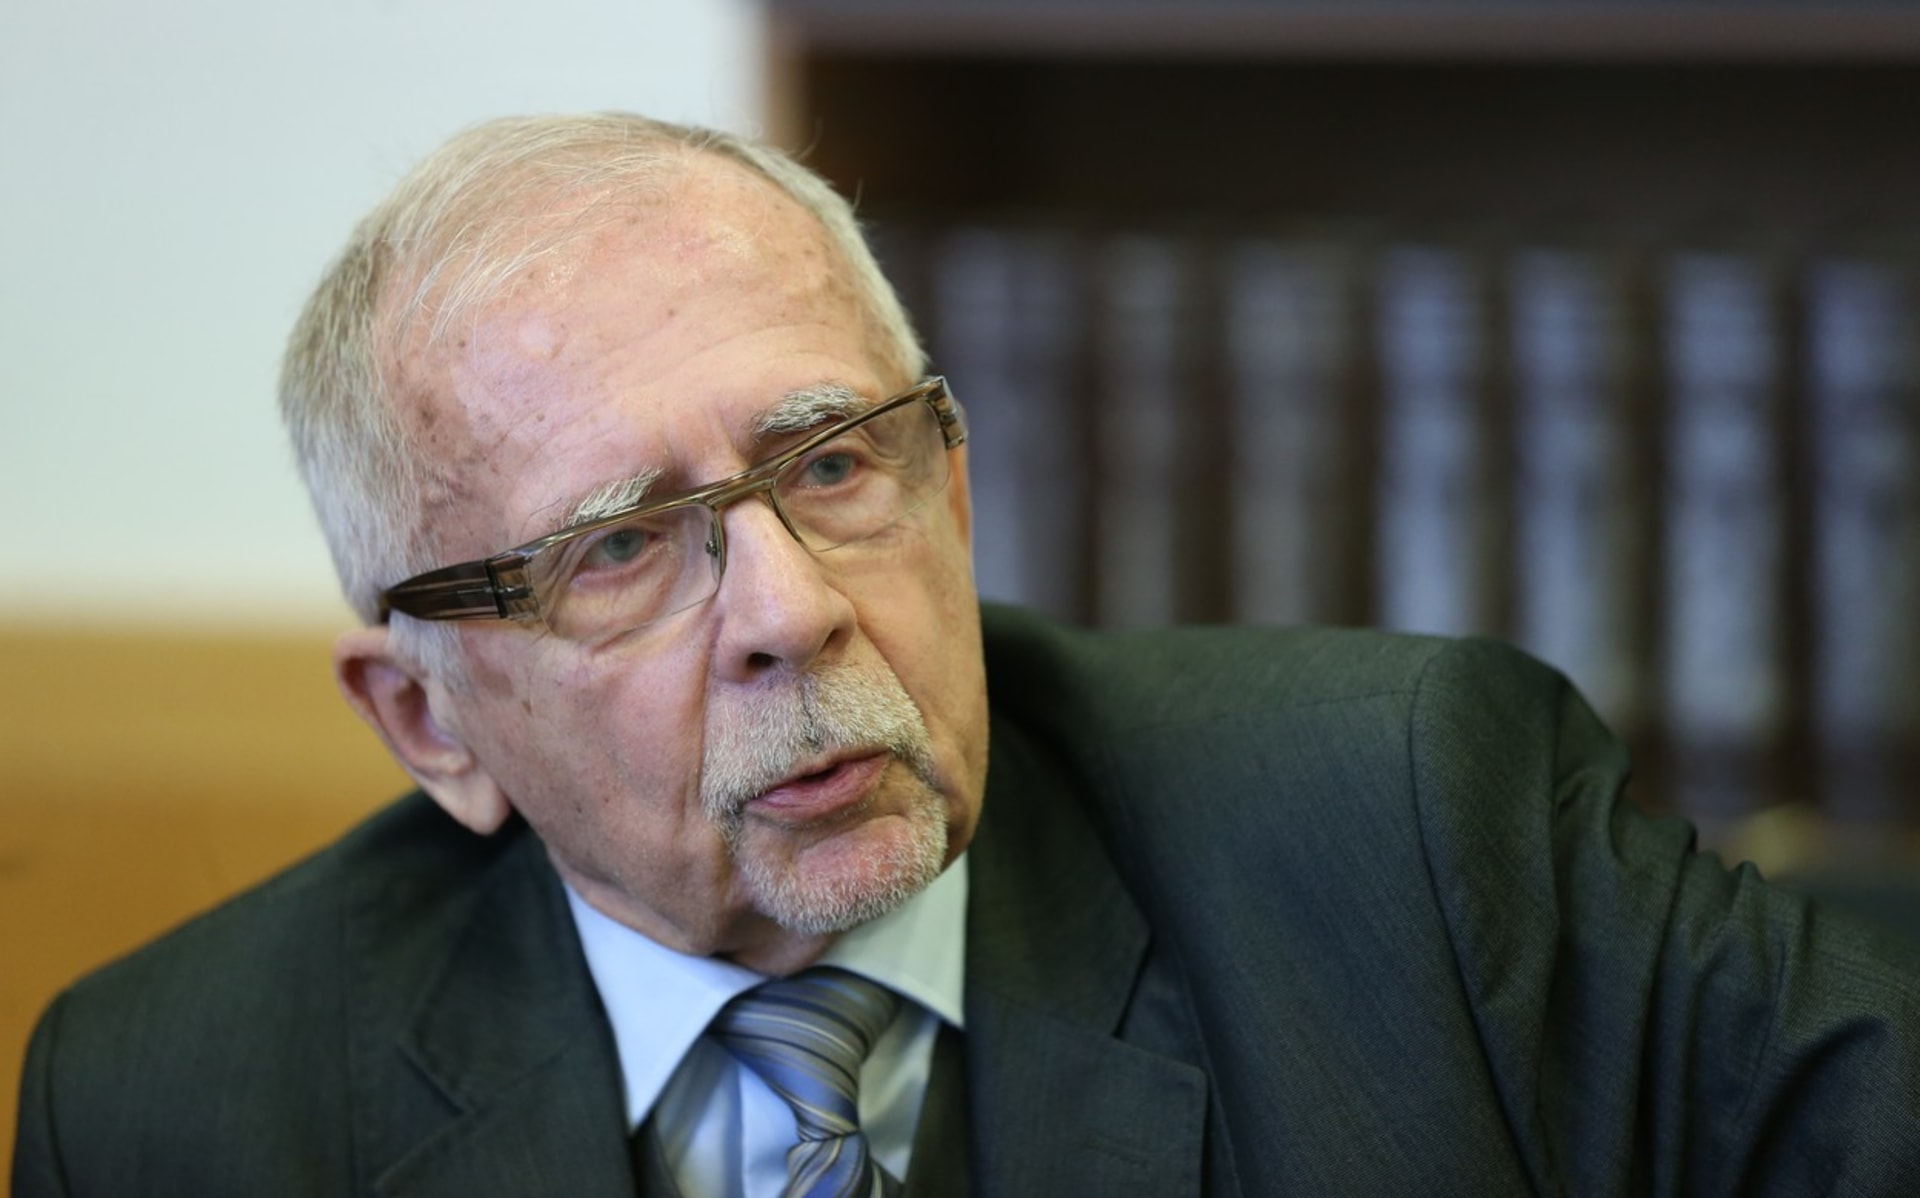 Odmítnout úvěr seniorovi kvůli věku je diskriminace, řekl ombudsman Stanislav Křeček. 